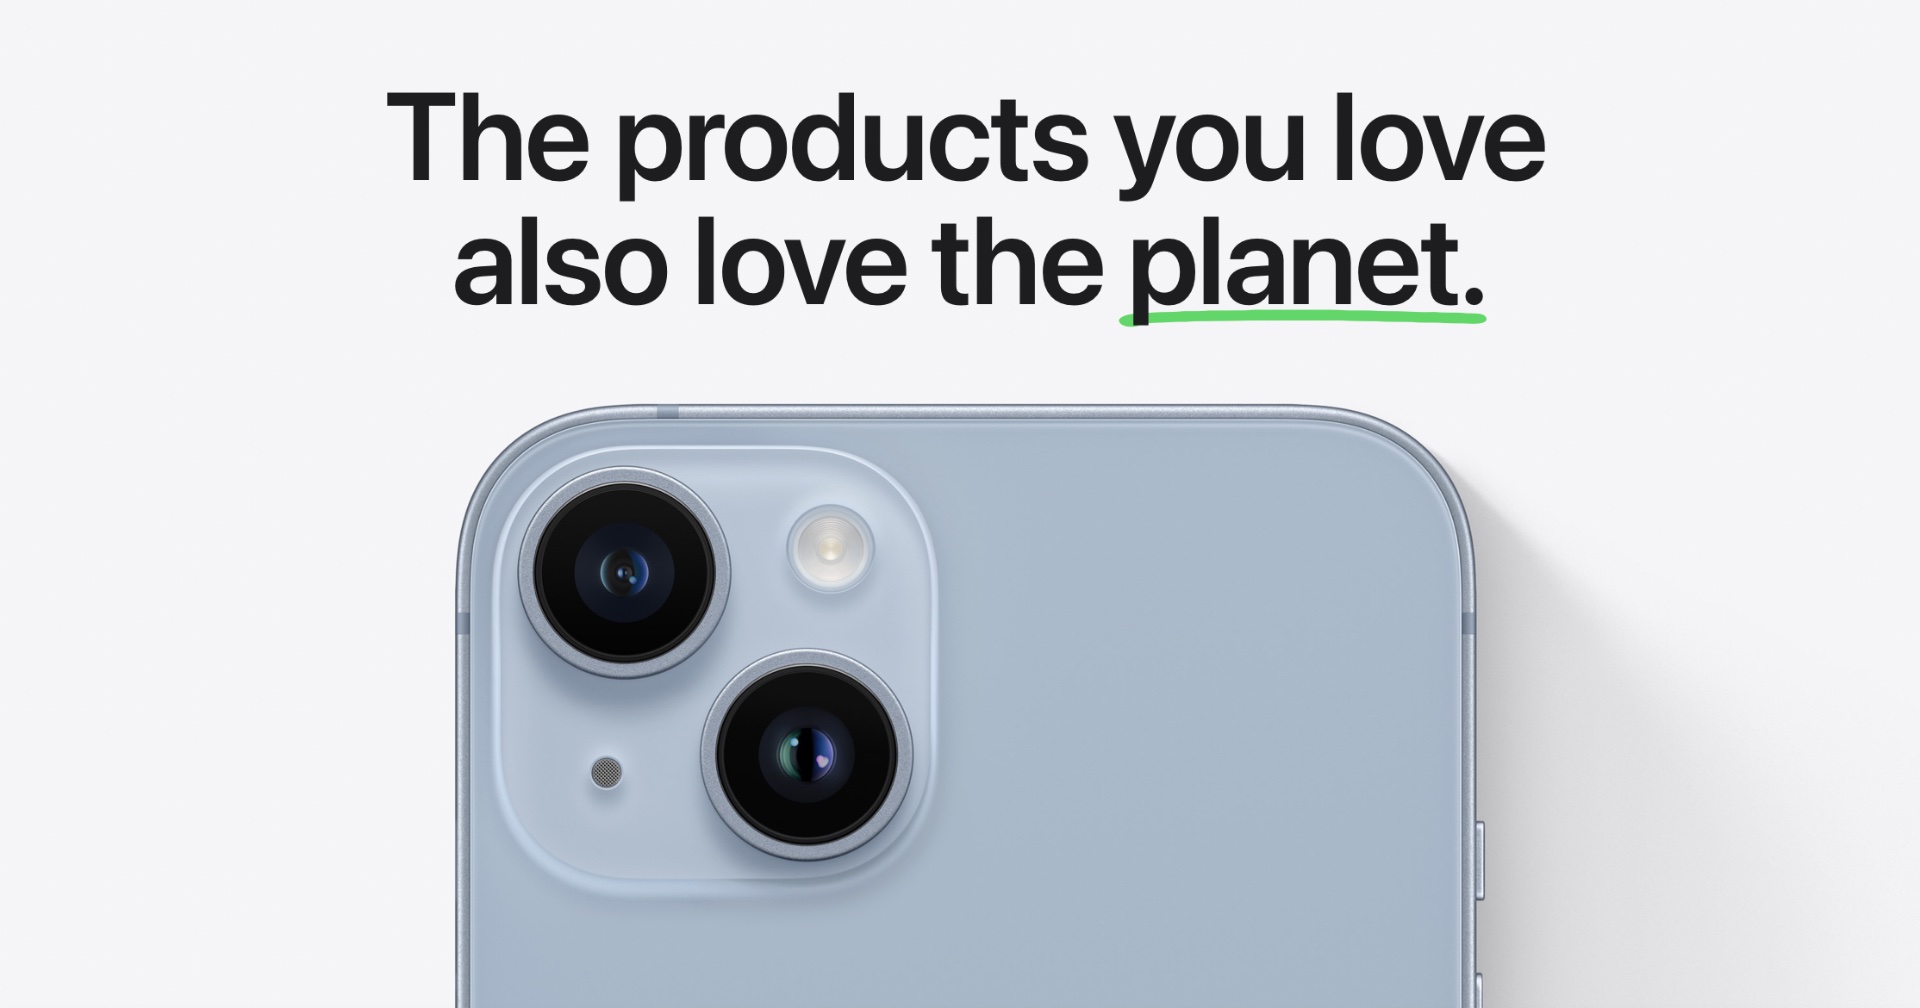 สื่อจวก Apple หากรักโลกจริง ไม่ควรเปิดตัว iPhone 14 เพราะแทบไม่มีอะไรใหม่